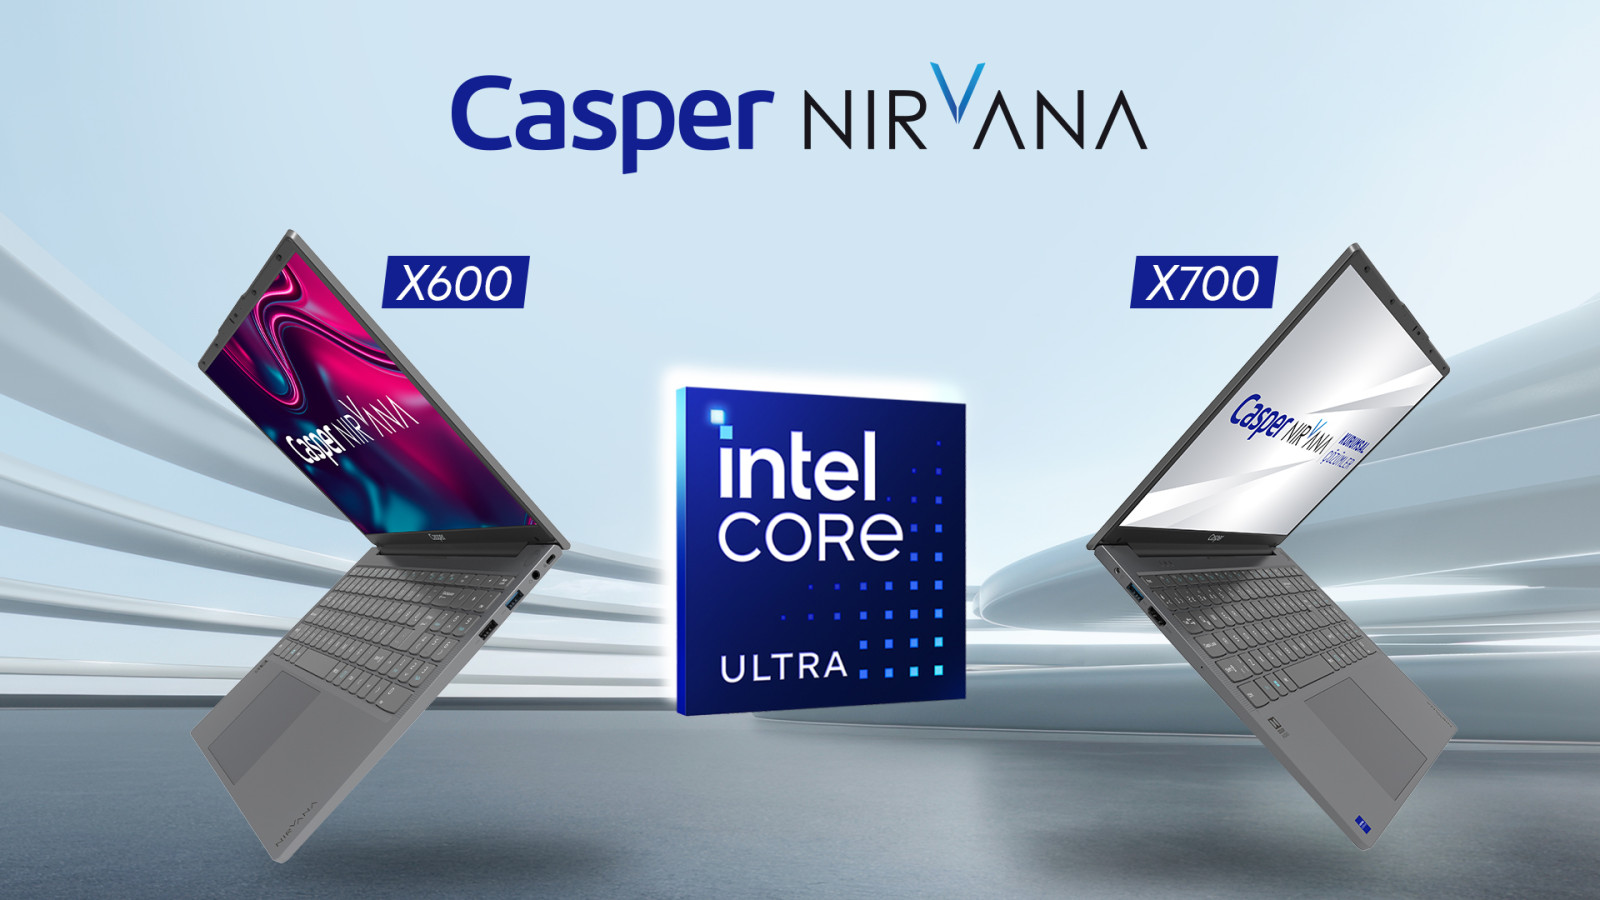 intel series 1 islemcilerle yenilenen casper nirvana x600 ve x700 duyuruldu 0 RZKrJ4BS